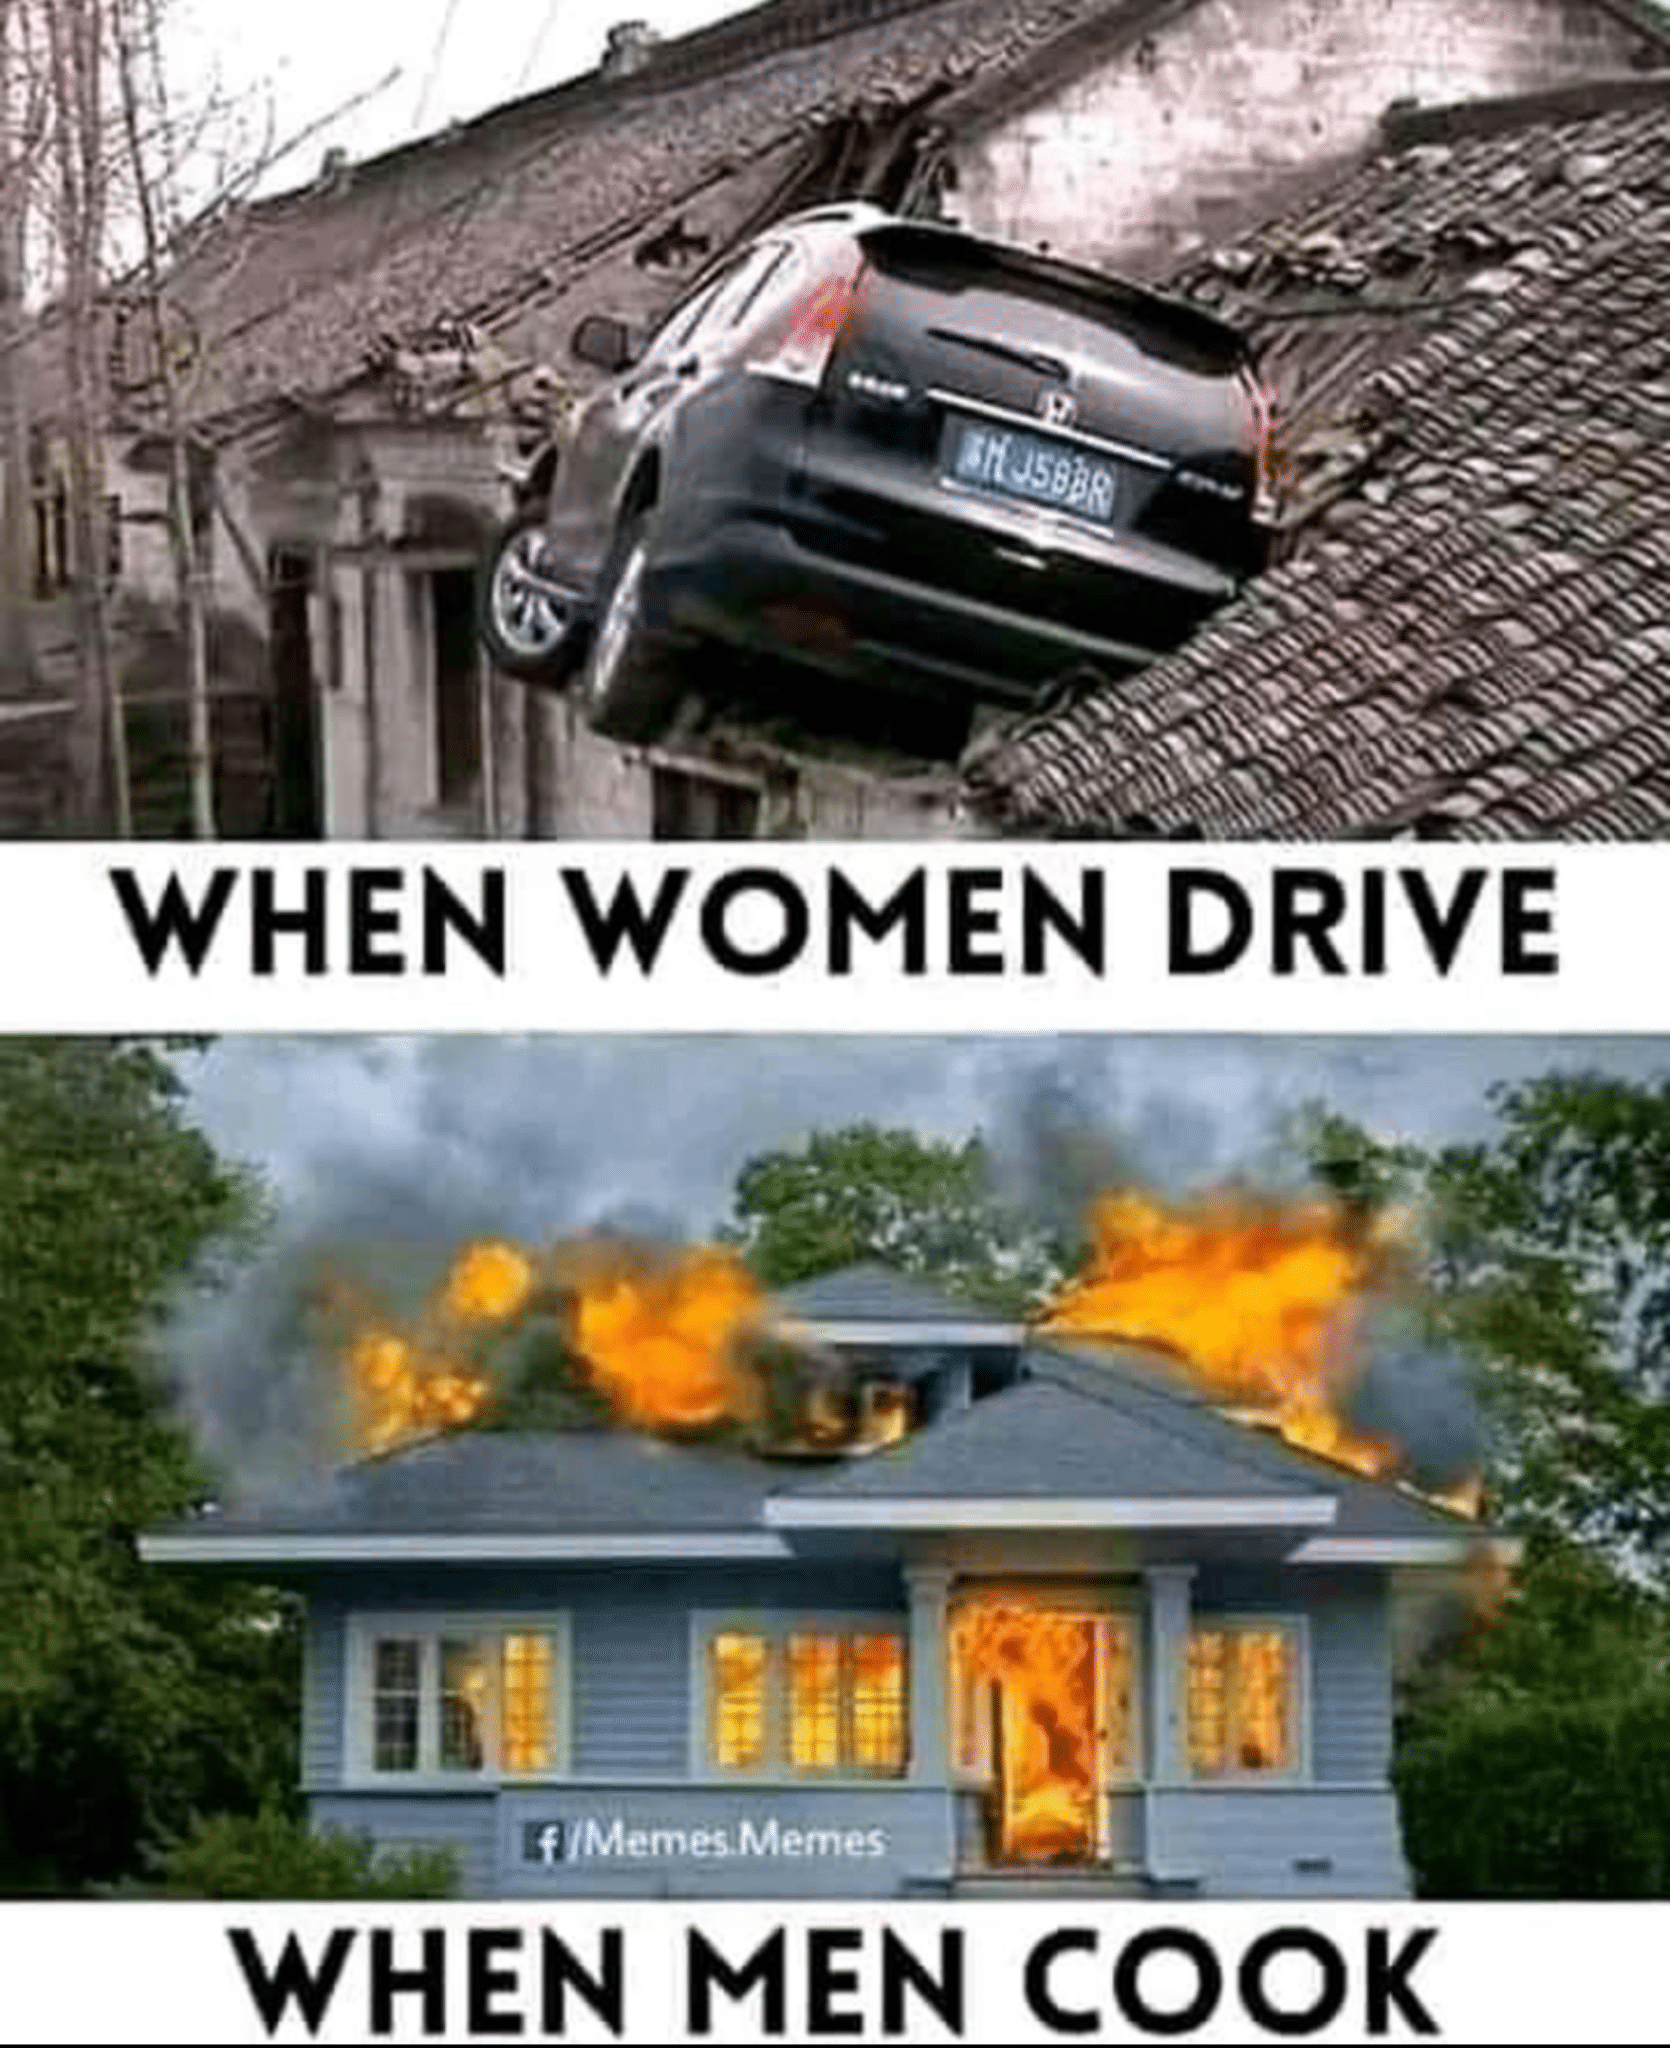 Cringe, Instagram, Facebook cringe memes Cringe, Instagram, Facebook text: WHEN WOMEN DRIVE WHEN MEN 00K 